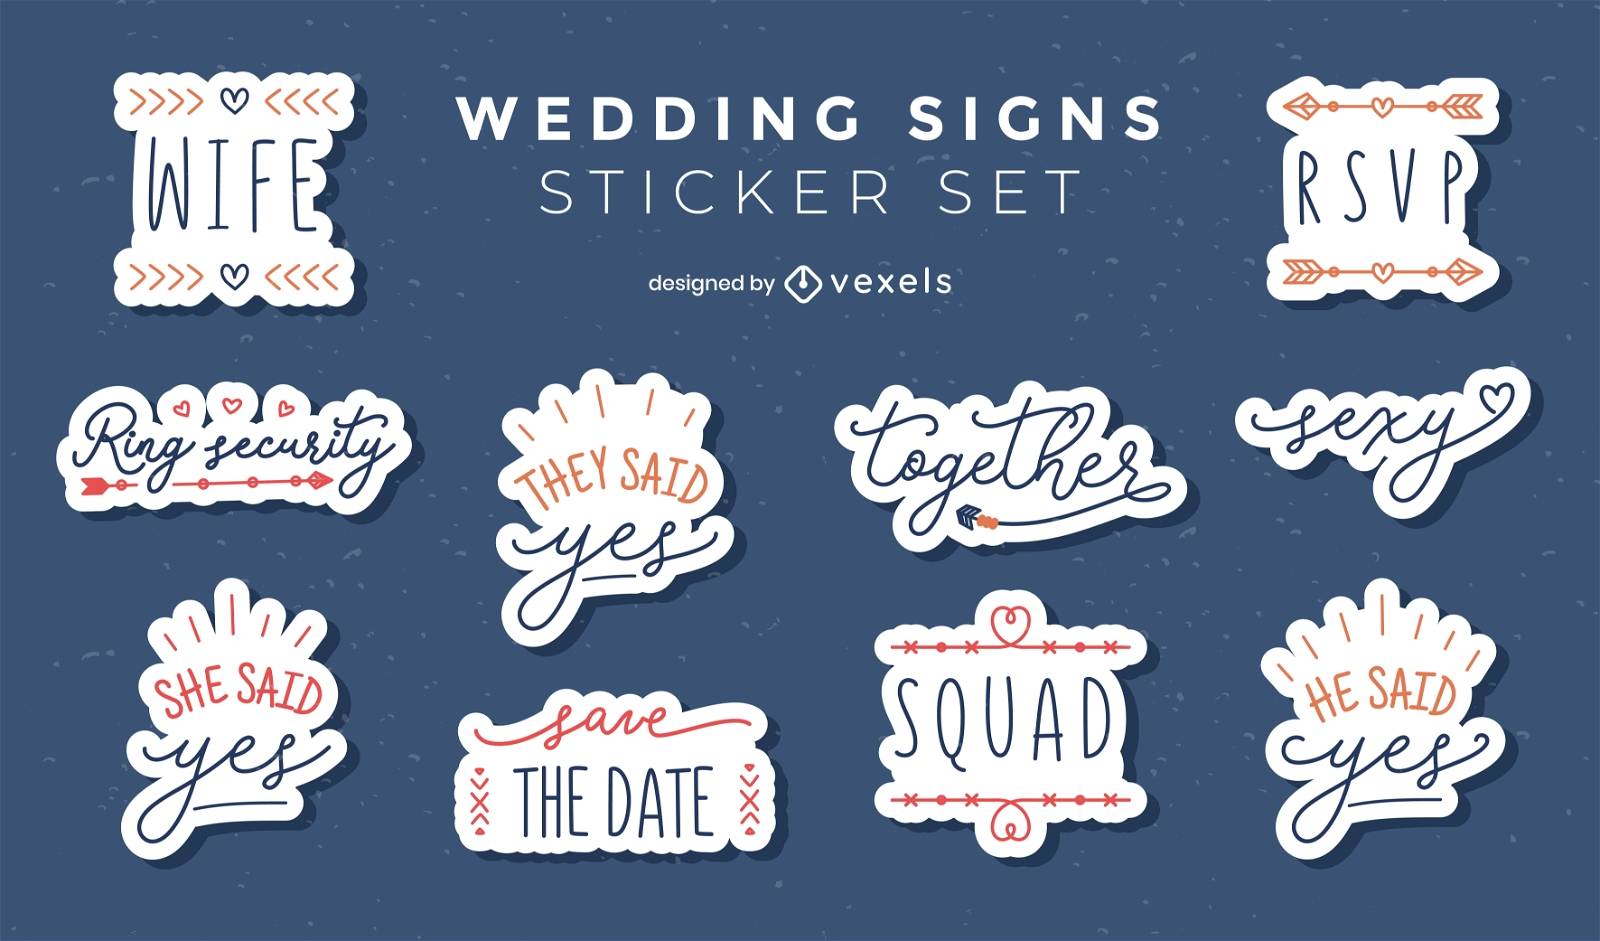 Wedding signs sticker set